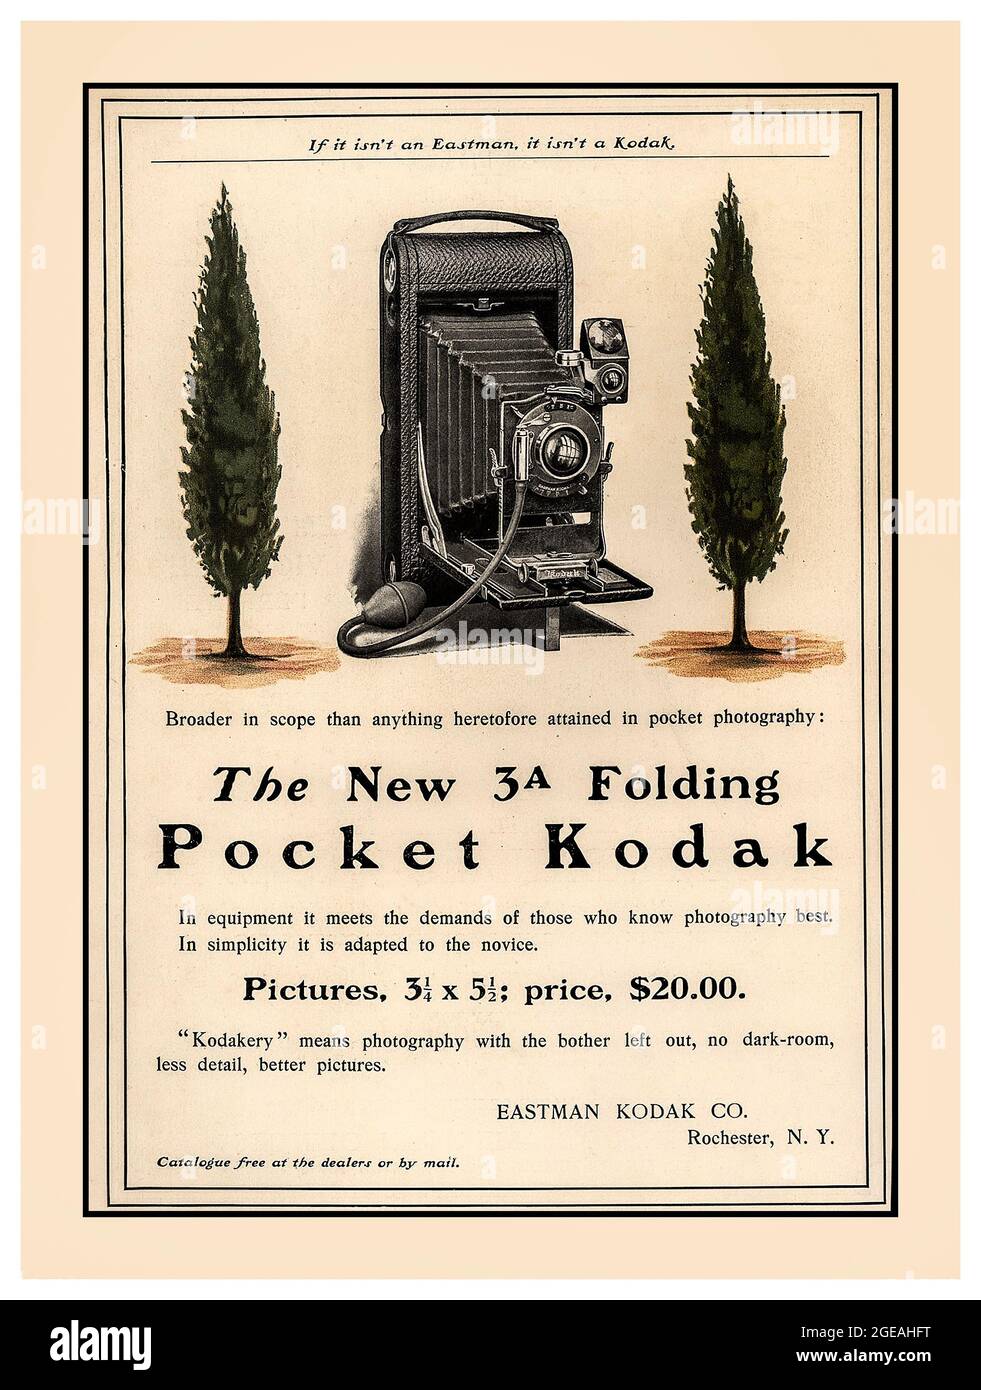 Vintage Kodak Camera Press anuncio de la cámara N° 3A Folding Pocket Kodak para realizar exposiciones en formato postal de 5½ 3¼ pulgadas en película tipo N° 122. Fue introducido por Kodak en 1903 y fabricado hasta 1915. Precio de $20,00. 'Si no es un Eastman, no es un Kodak' Foto de stock